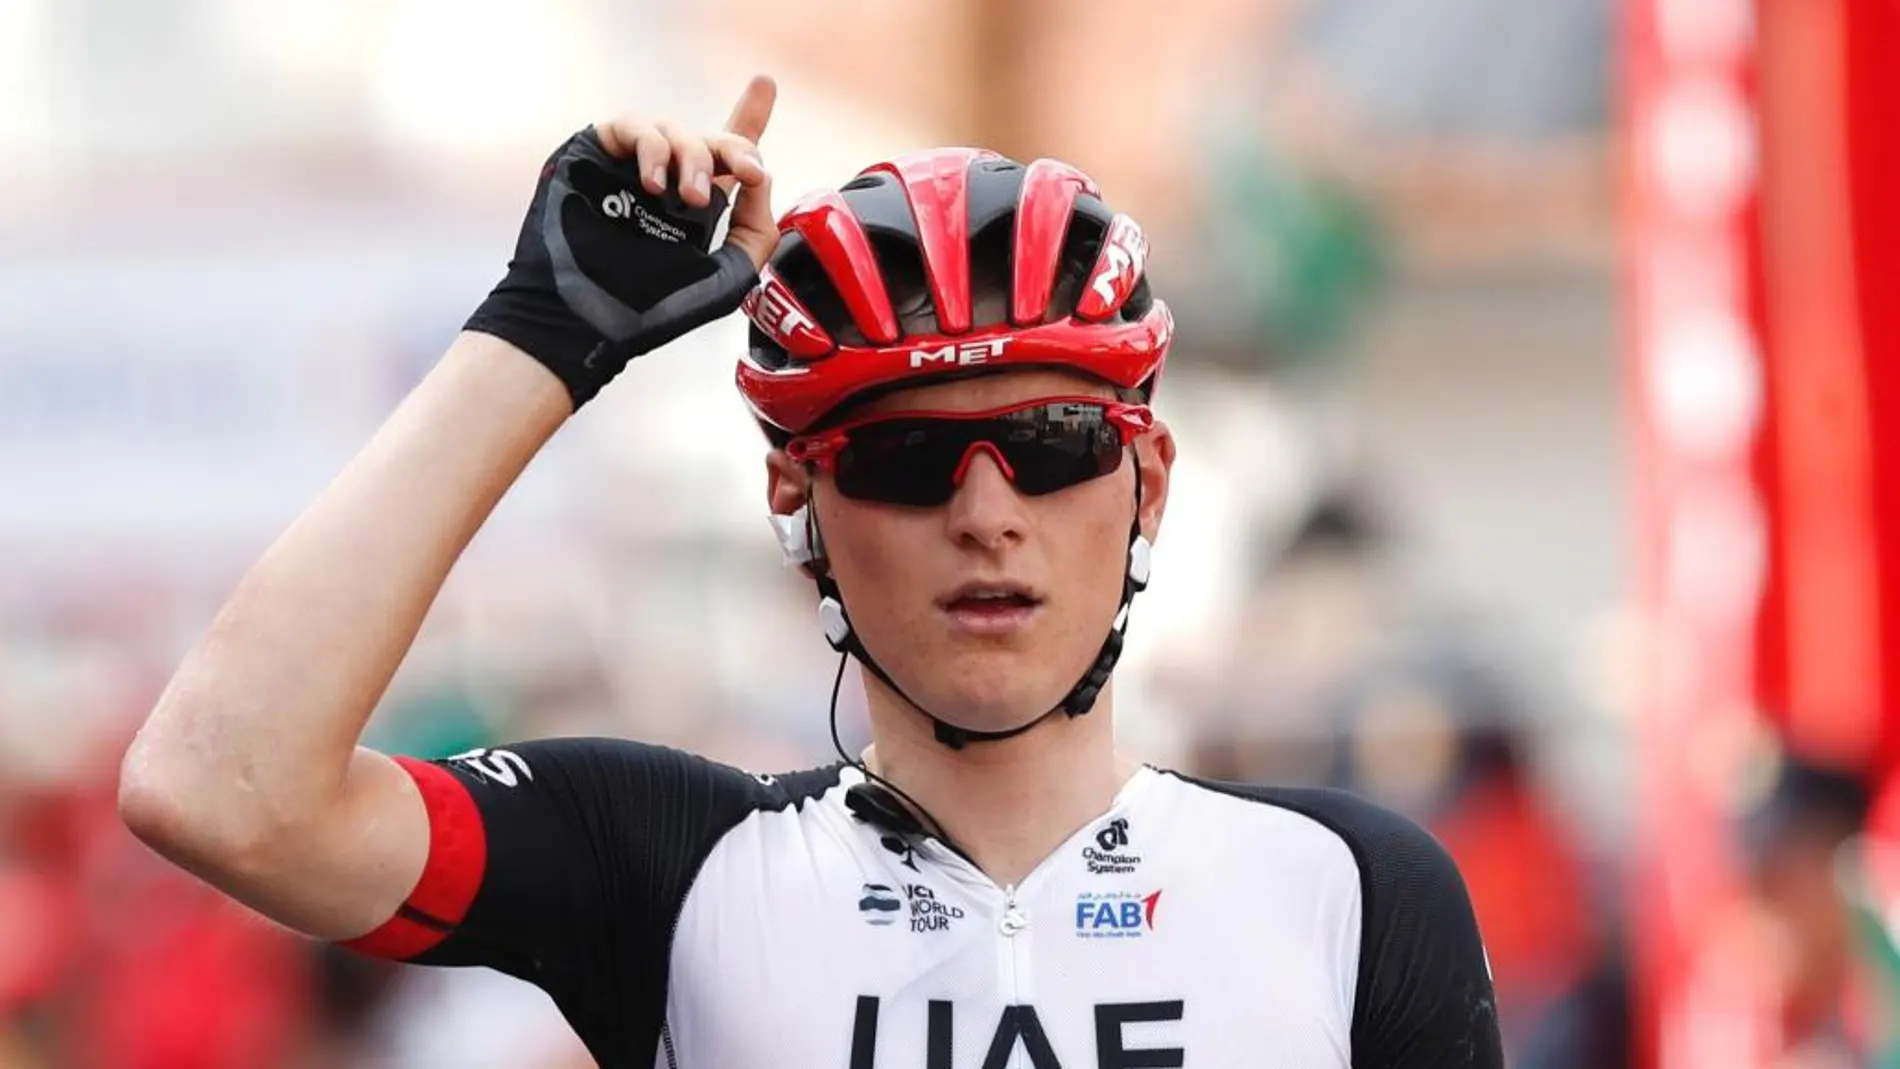 El esloveno Matej Mohoric, del equipo UAE, celebra su victoria en la séptima etapa de la Vuelta Ciclista a España, con salida en la localidad valenciana de Llíria y meta en Cuenca con un recorrido de 207 kilómetros.